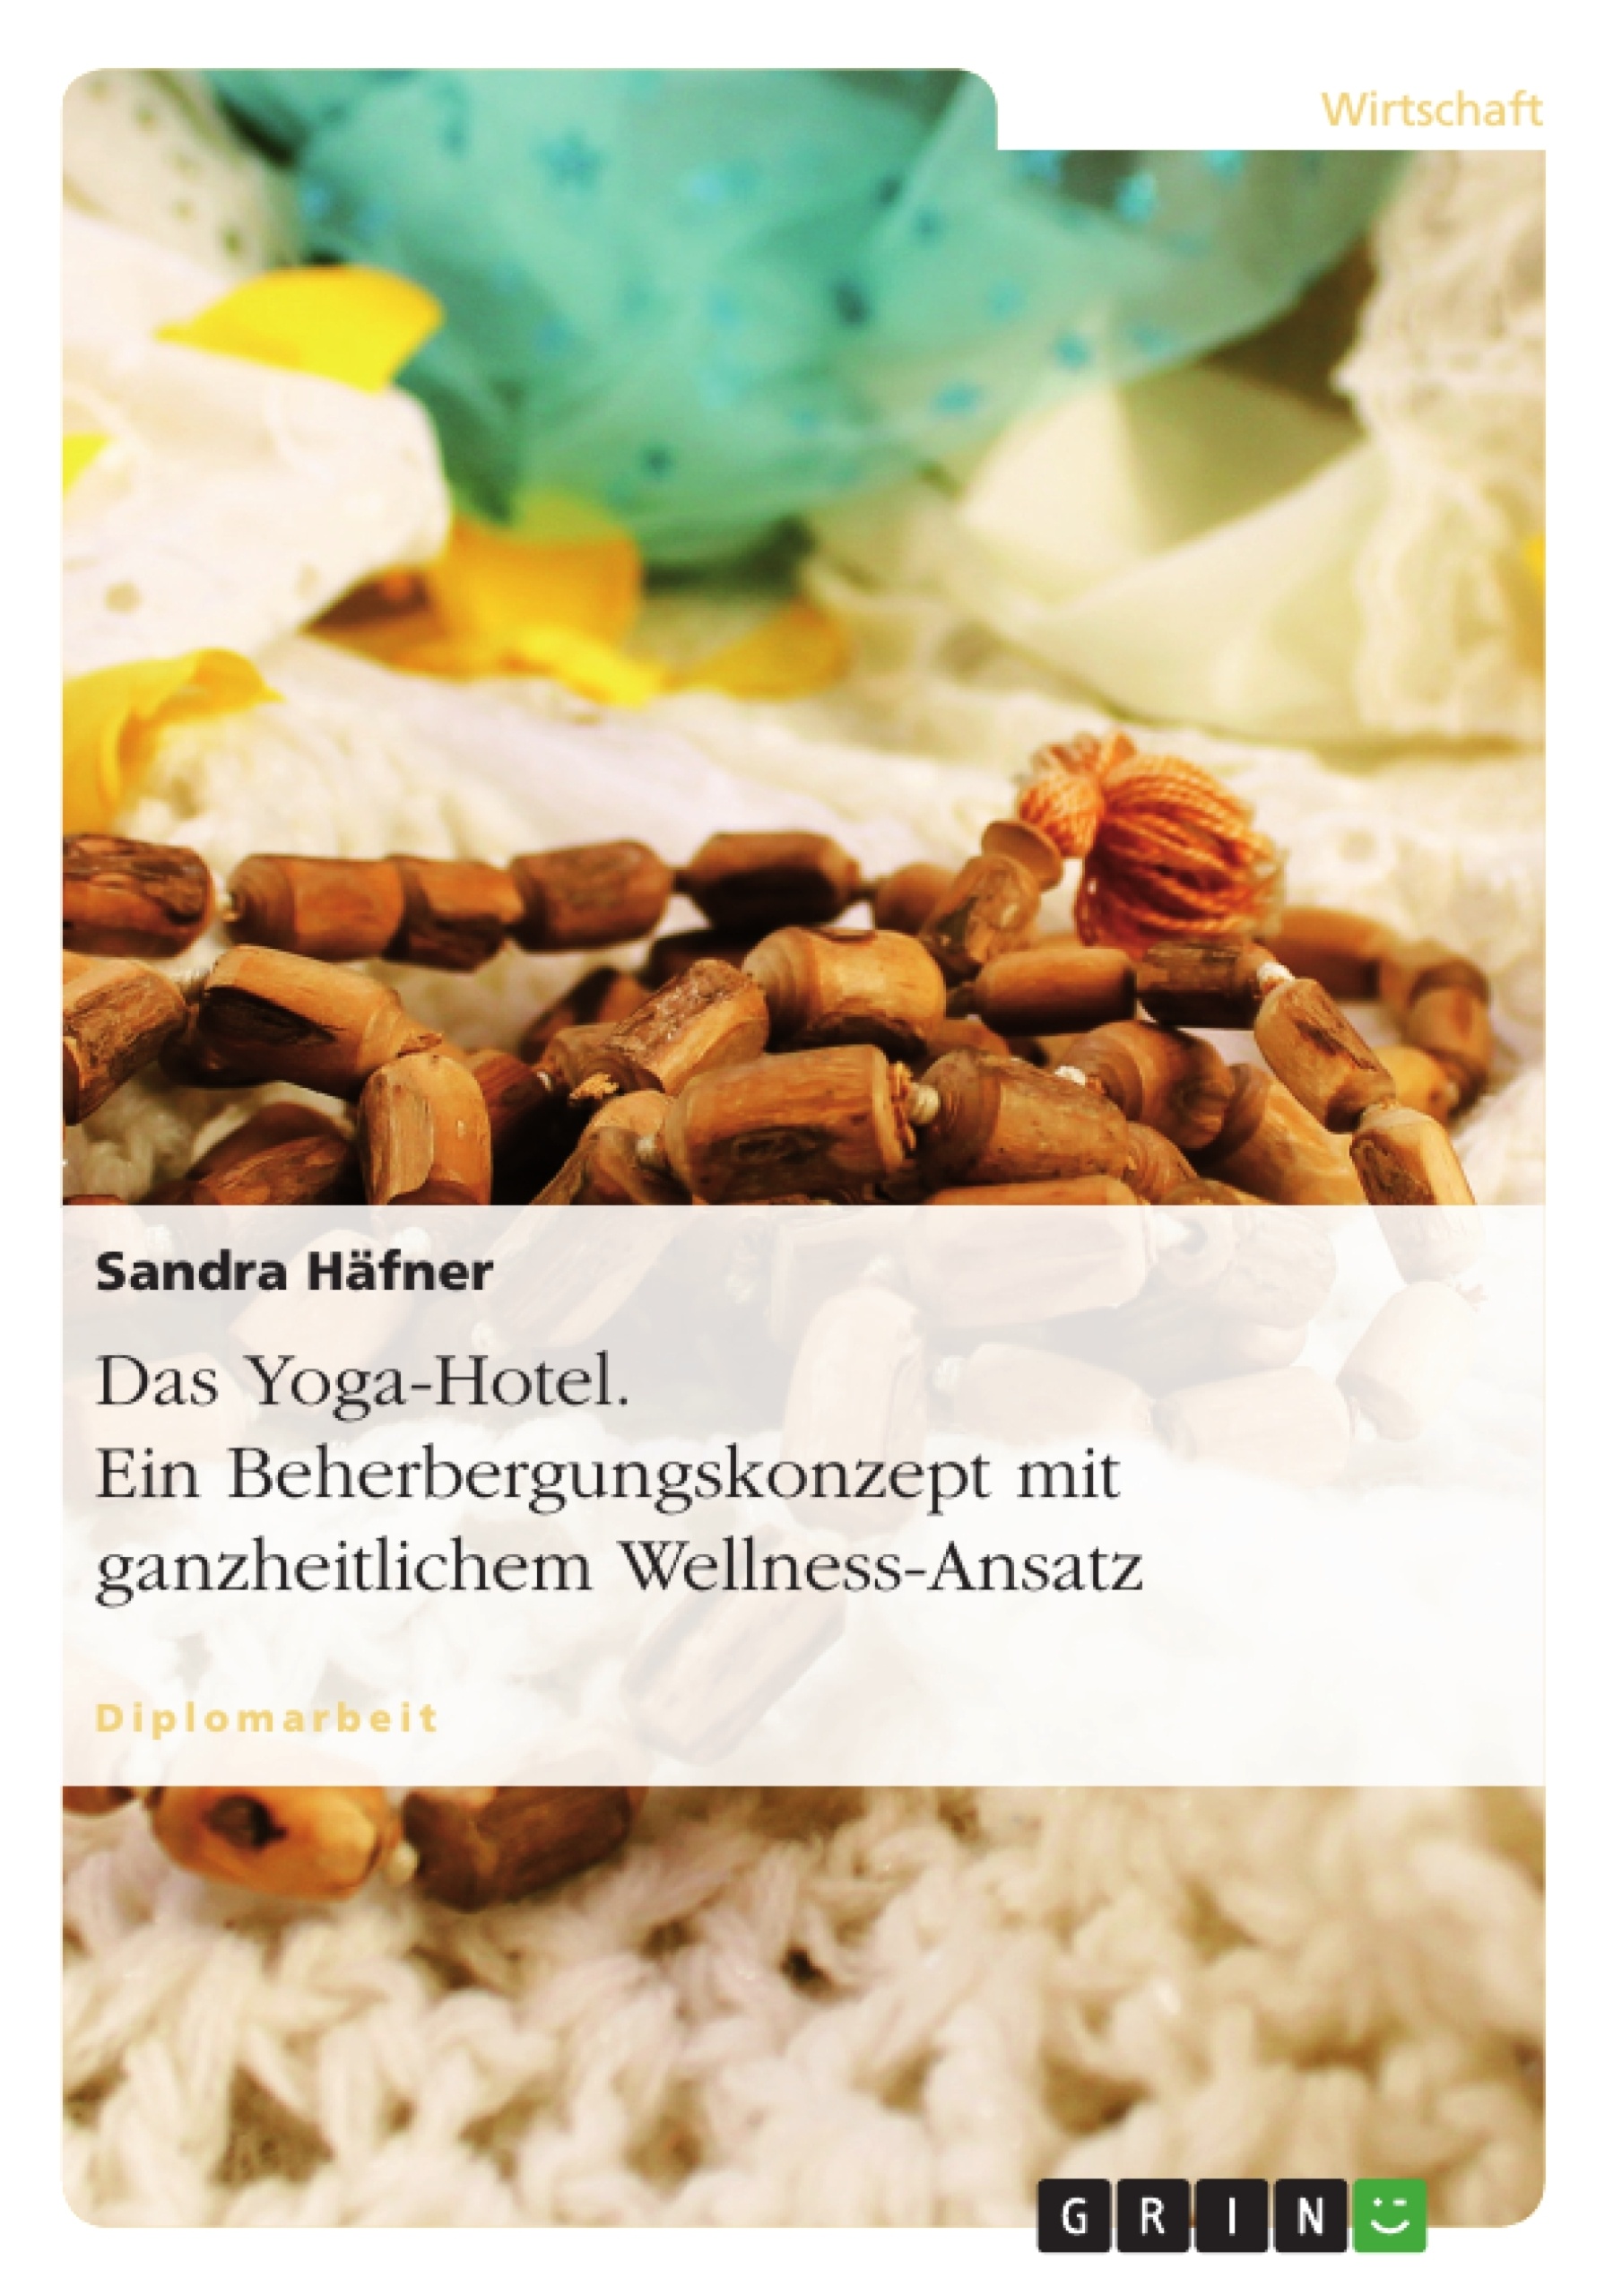 Titre: Das Yoga-Hotel. Ein Beherbergungskonzept mit ganzheitlichem Wellness-Ansatz